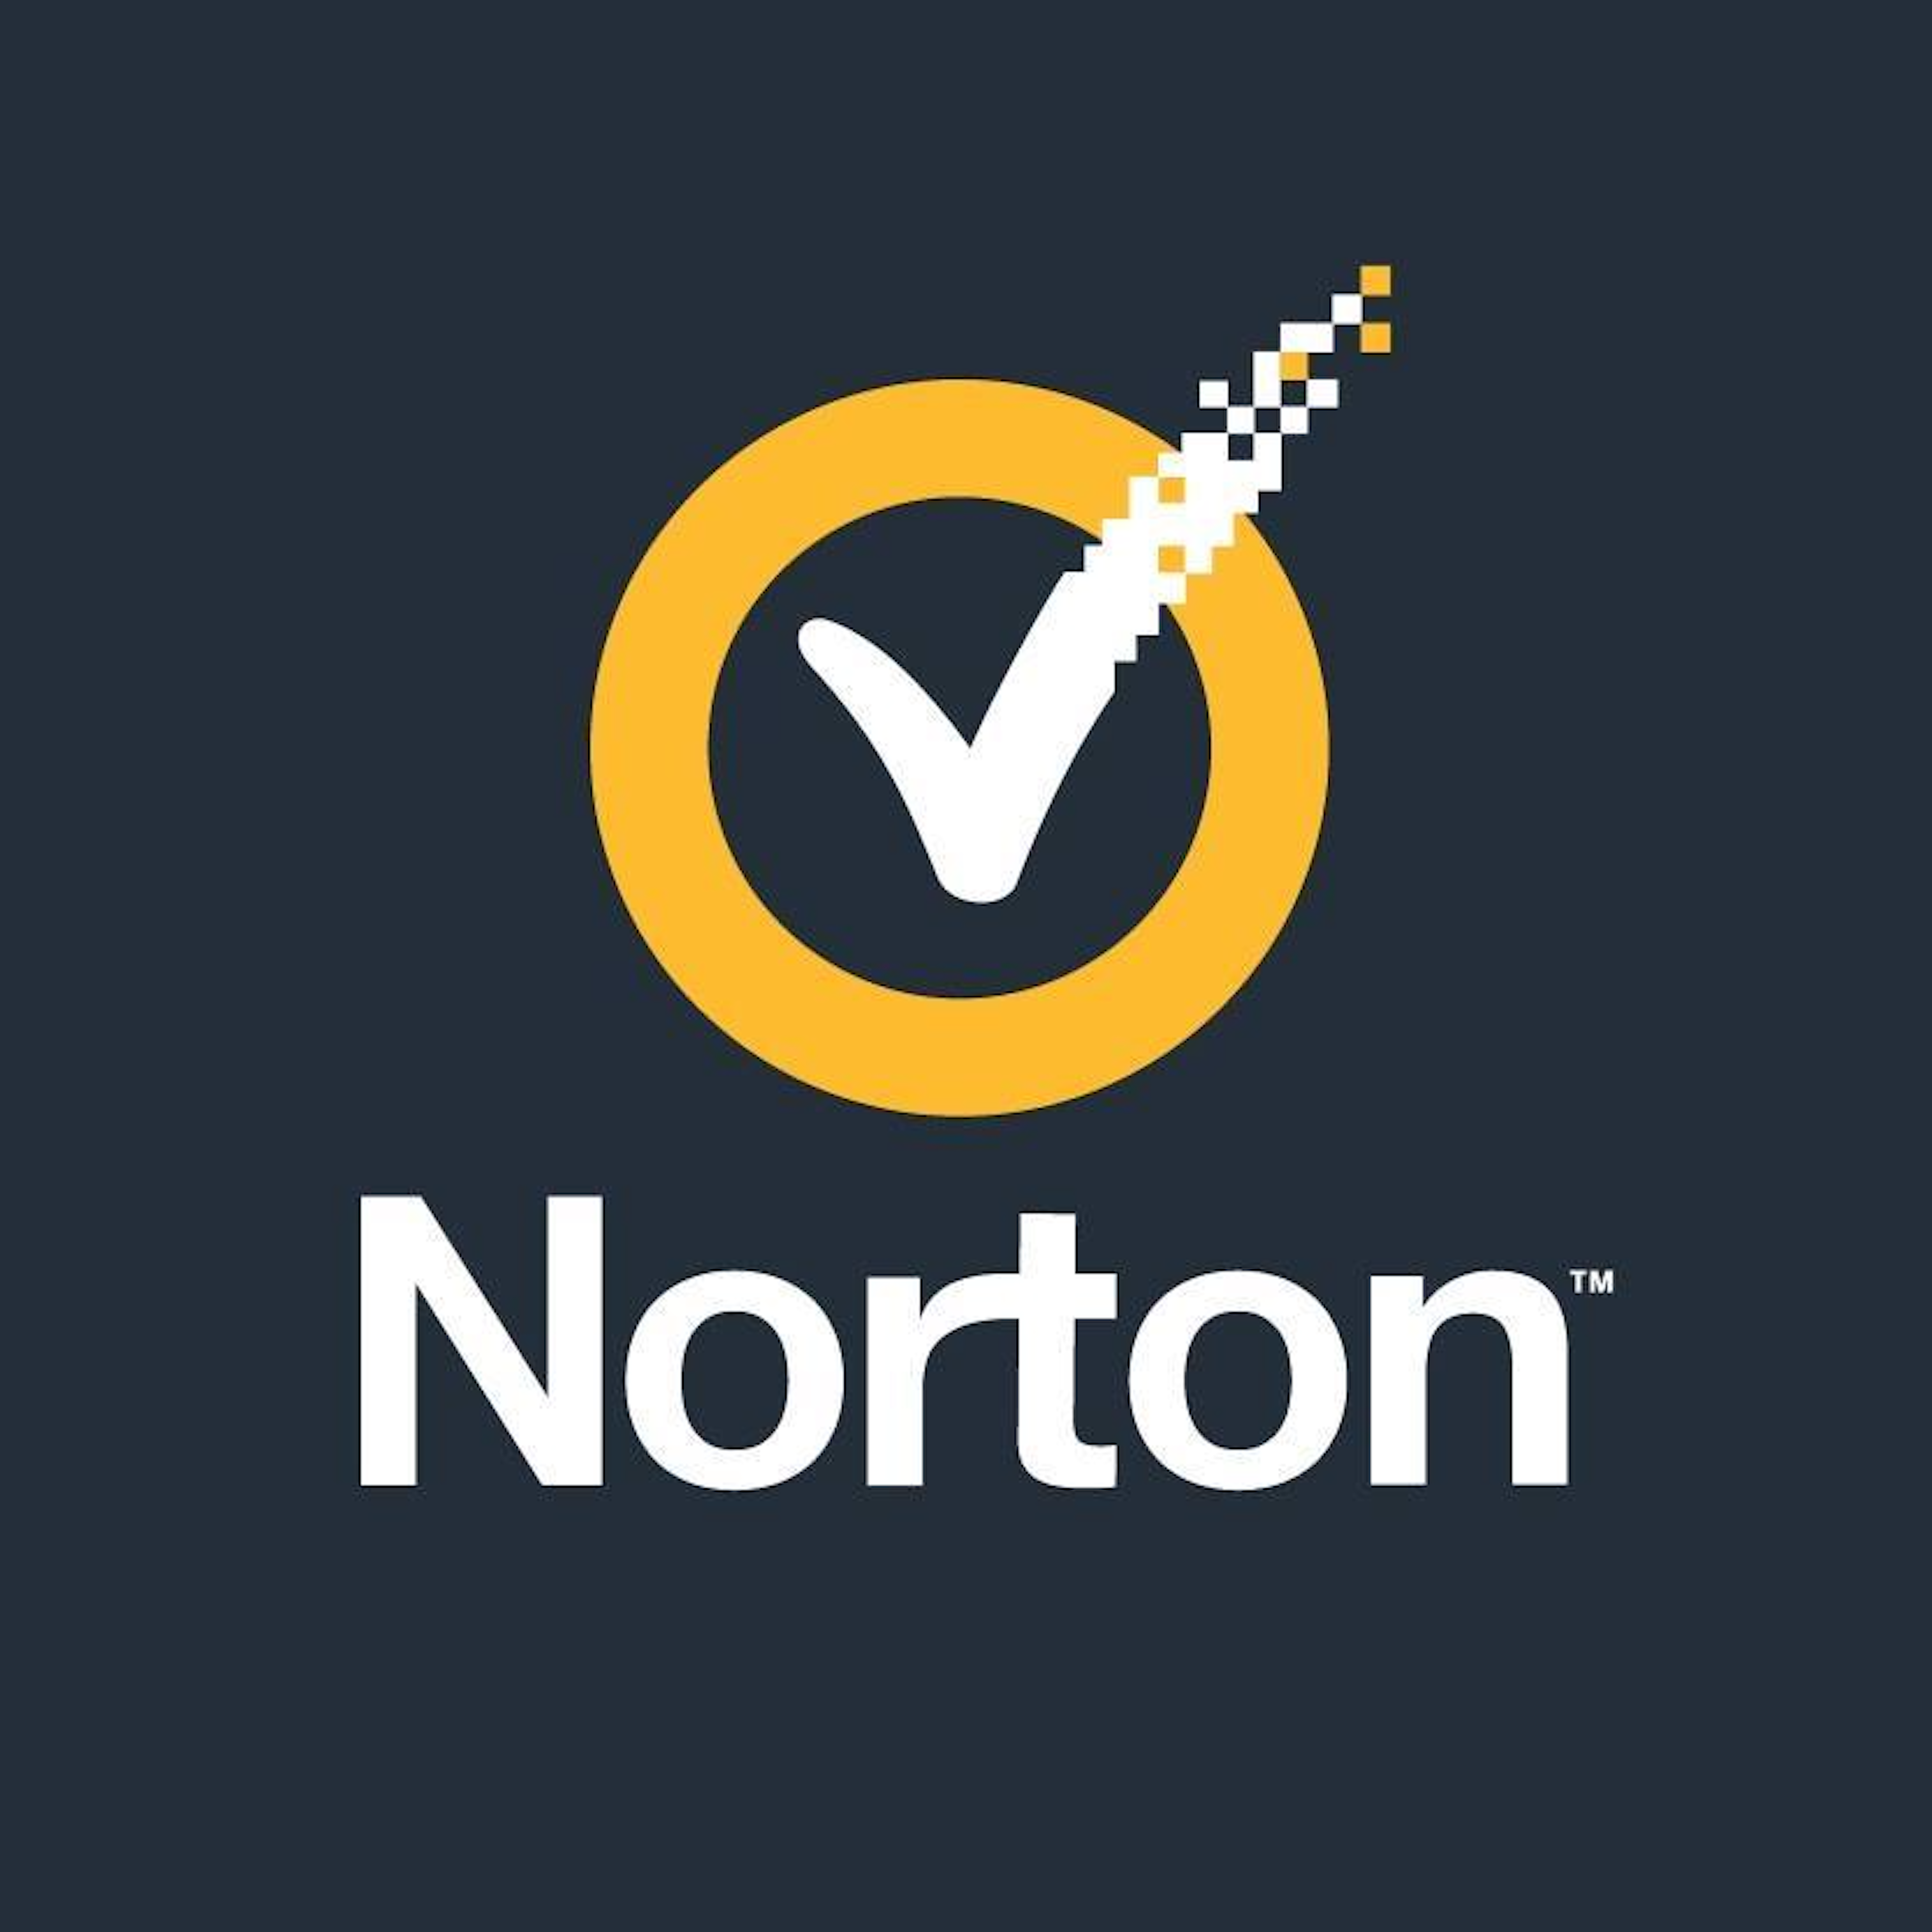 Norton Secure VPN Logo